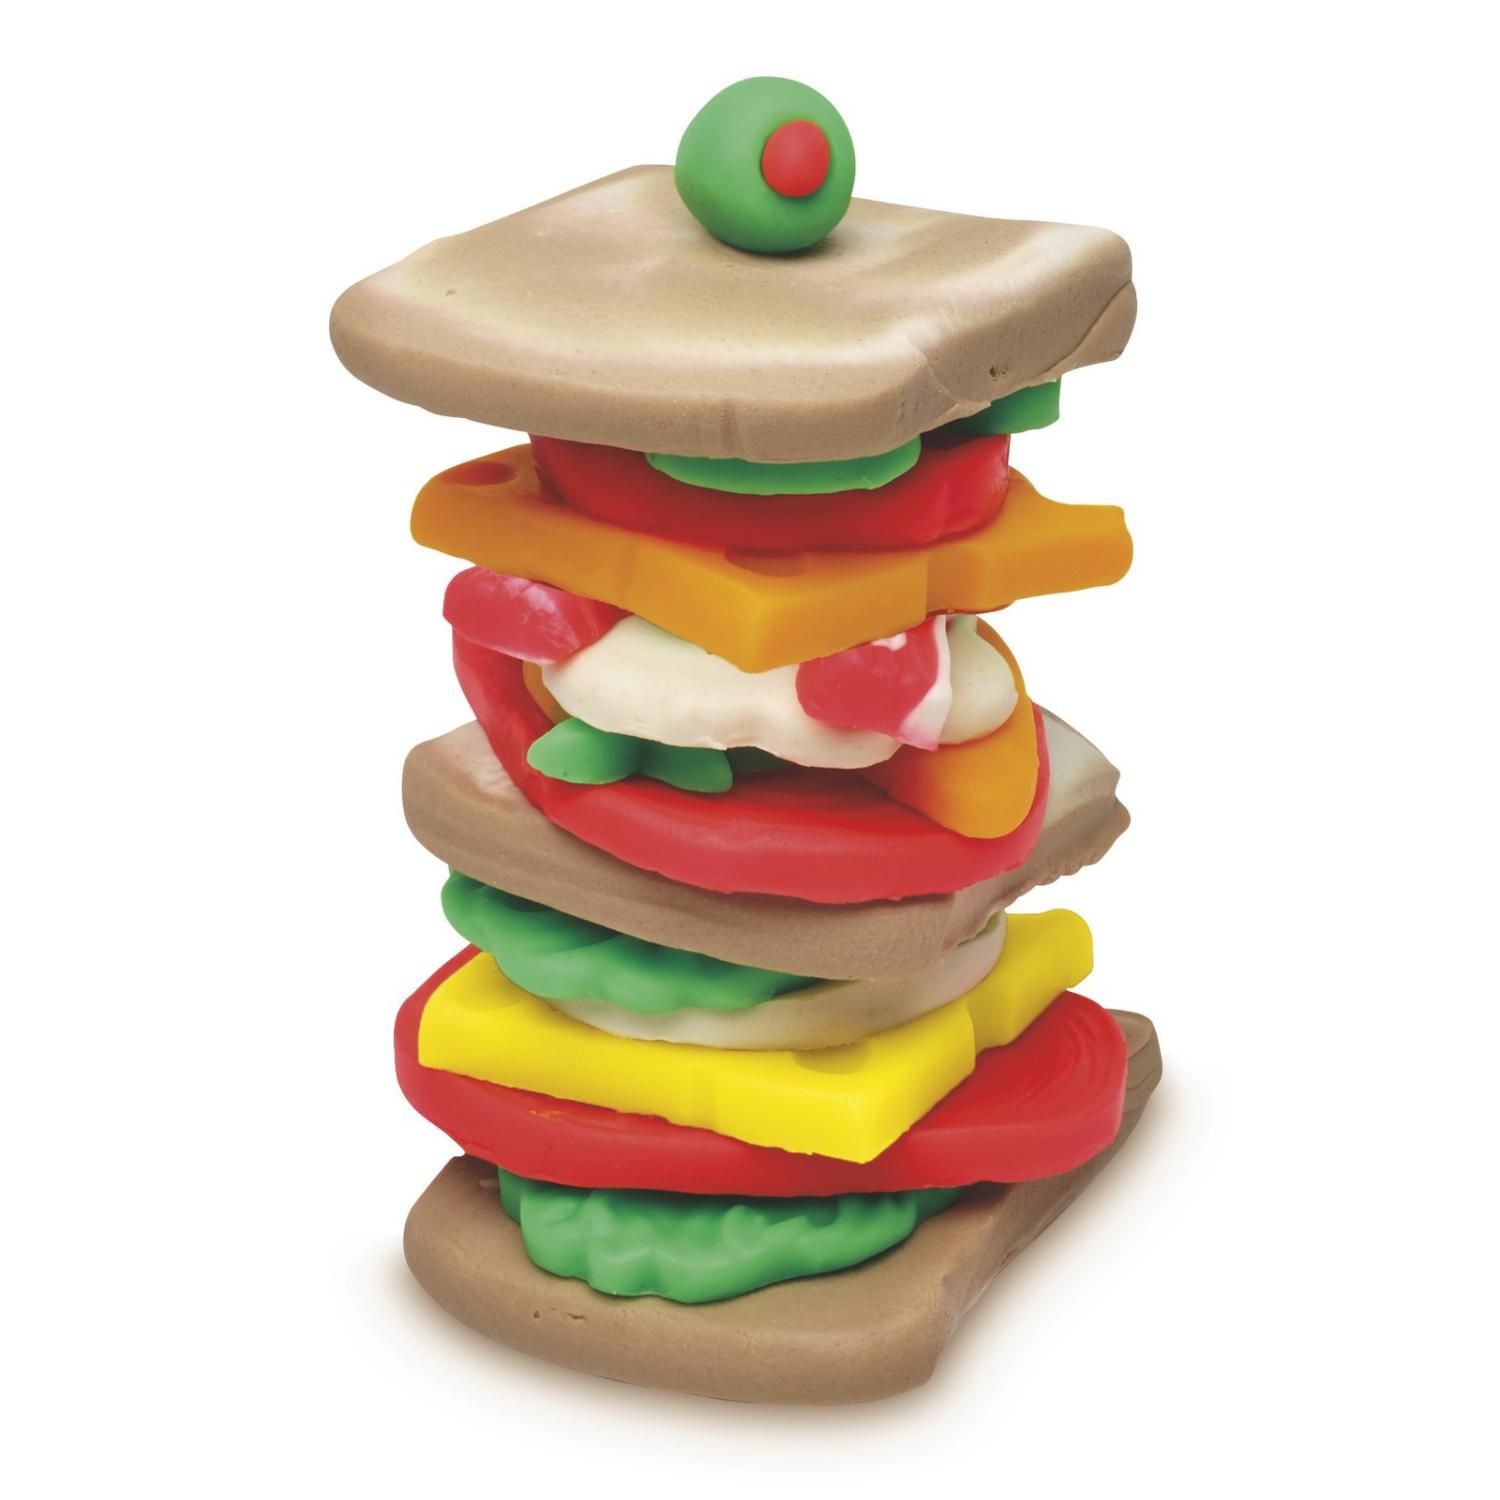 Игровой набор Play-Doh - Тостер